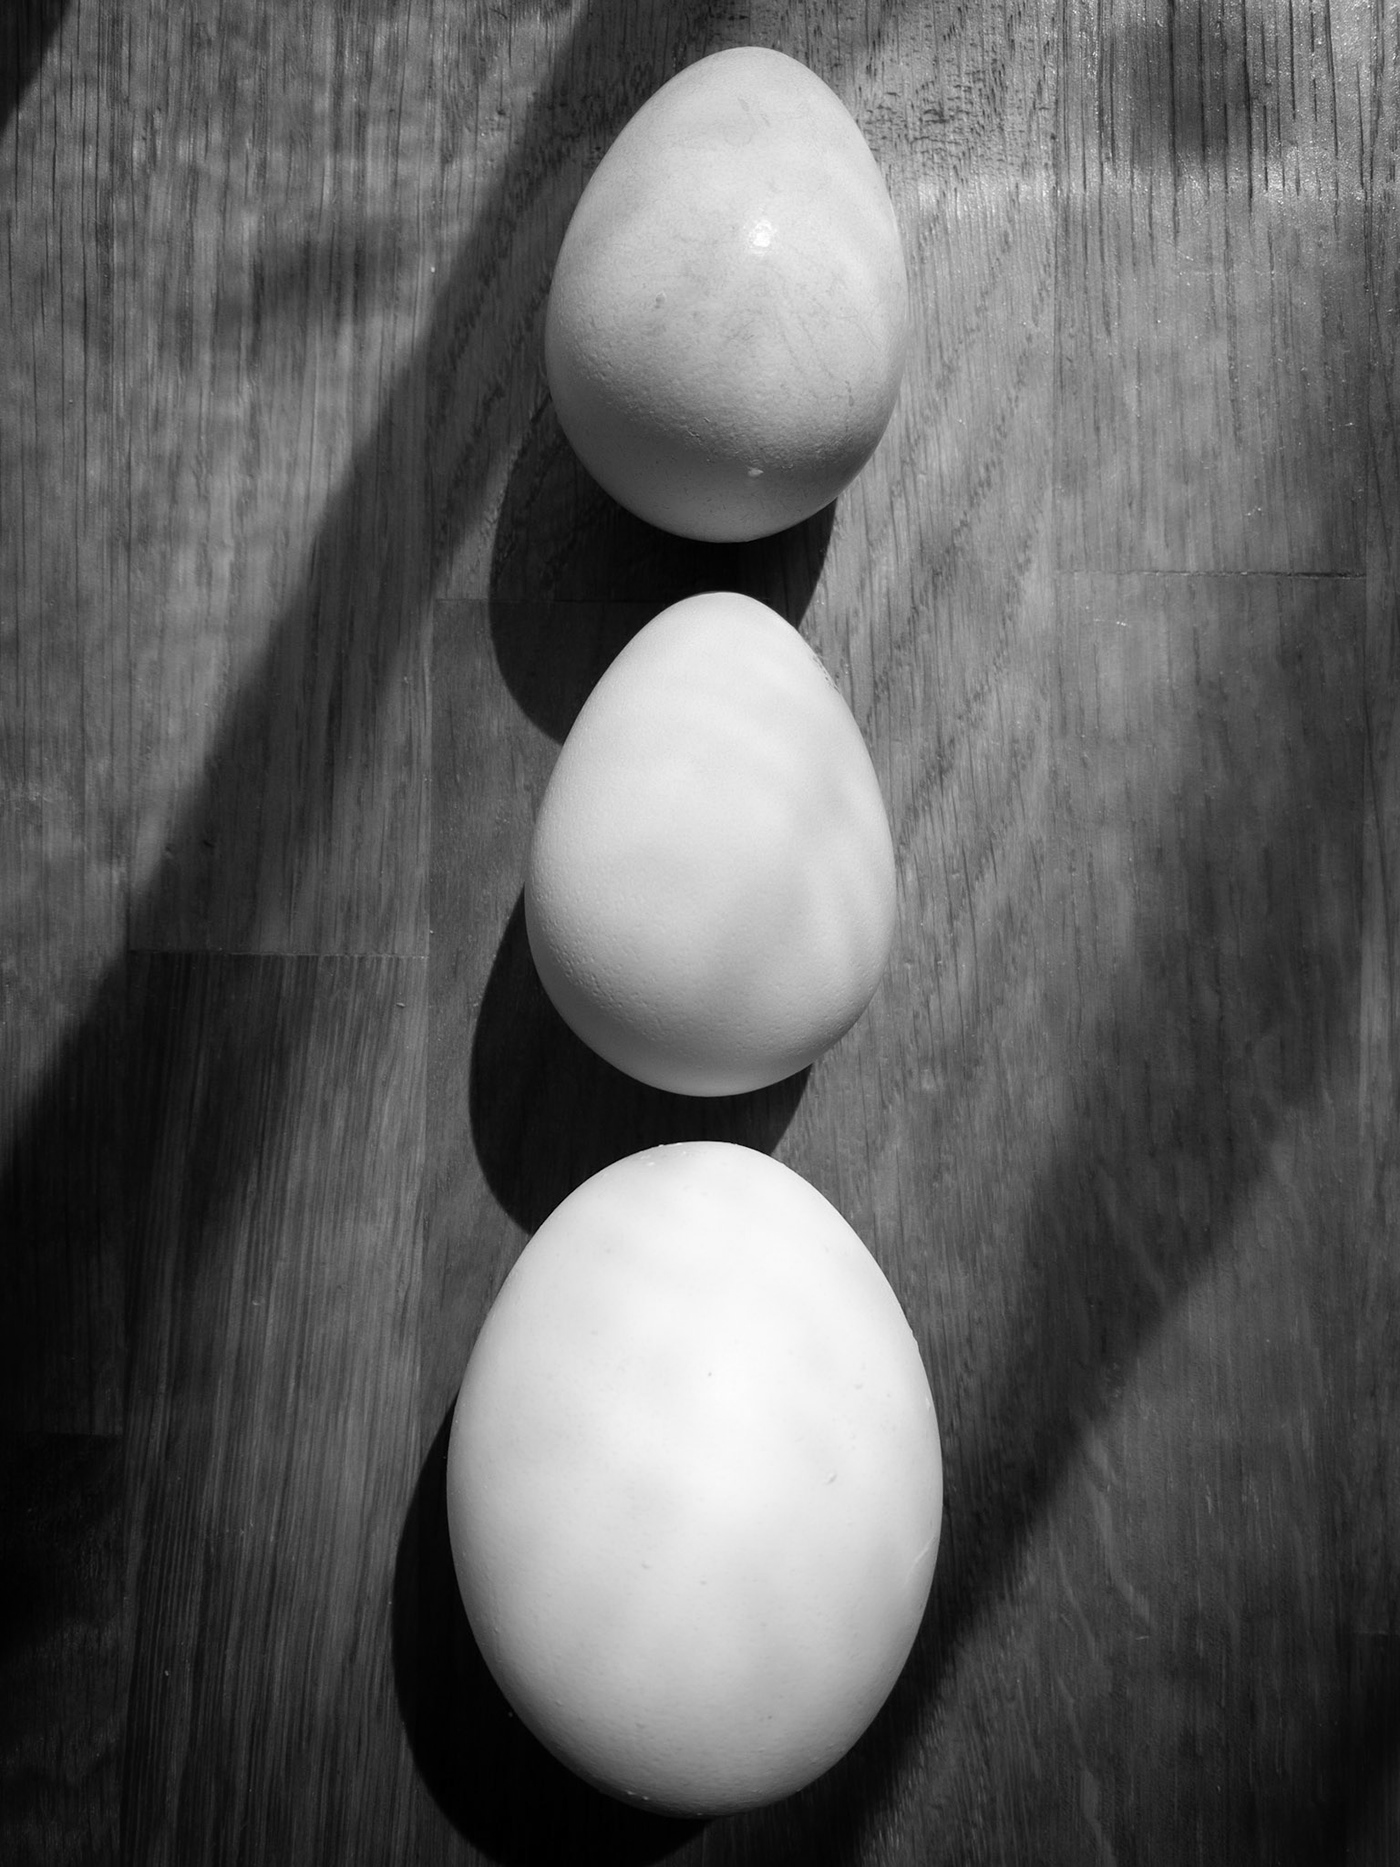 blackandwhite eggs guineafowl hardlight hen softlight Sun woodtable